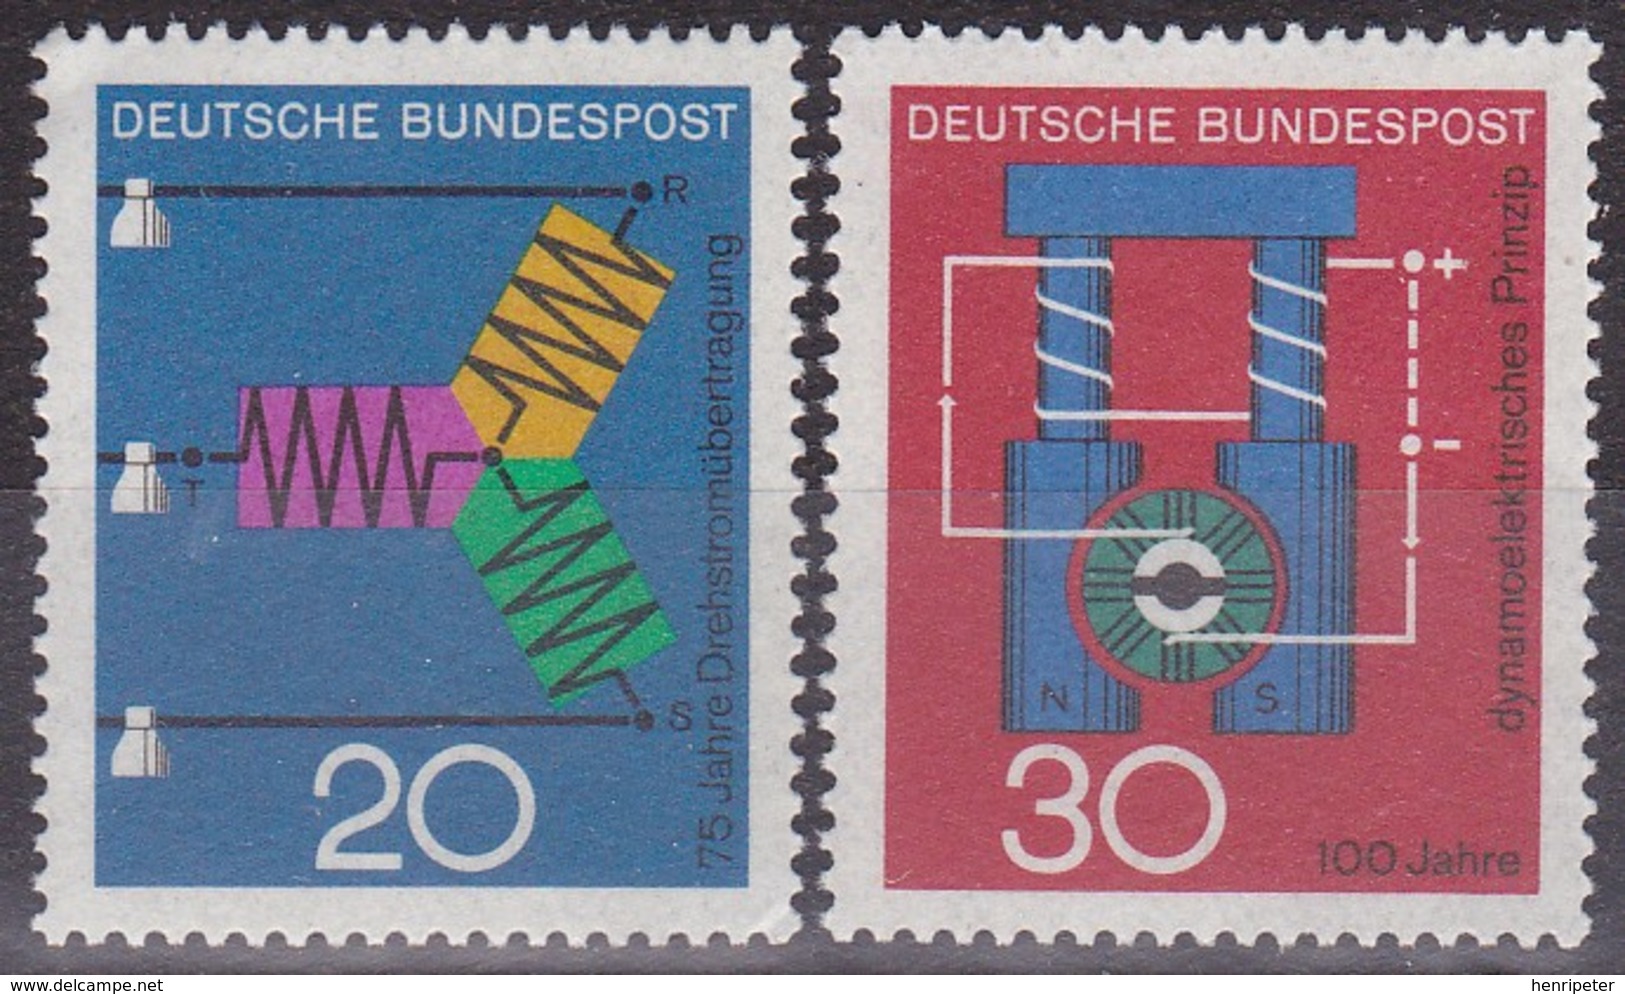 Série De 2 Timbres-poste Neufs** - Transmission Triphasée Dynamo électrique - N° 378-379 (Yvert) - RFA 1966 - Ungebraucht